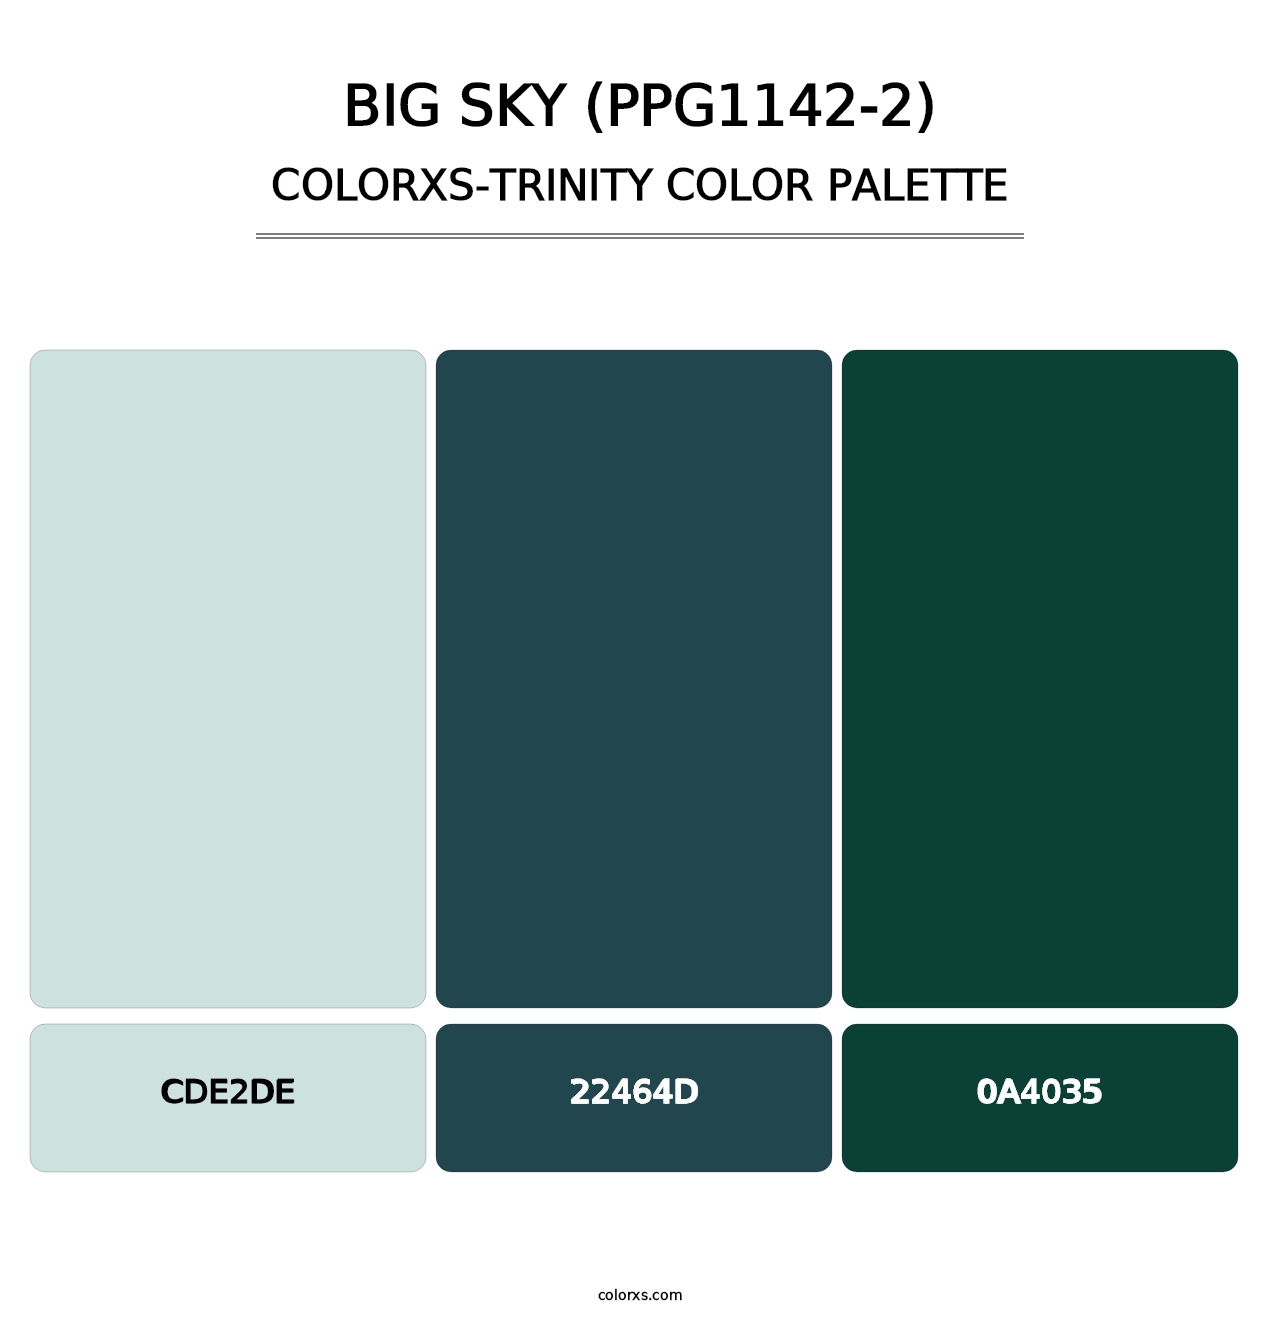 Big Sky (PPG1142-2) - Colorxs Trinity Palette